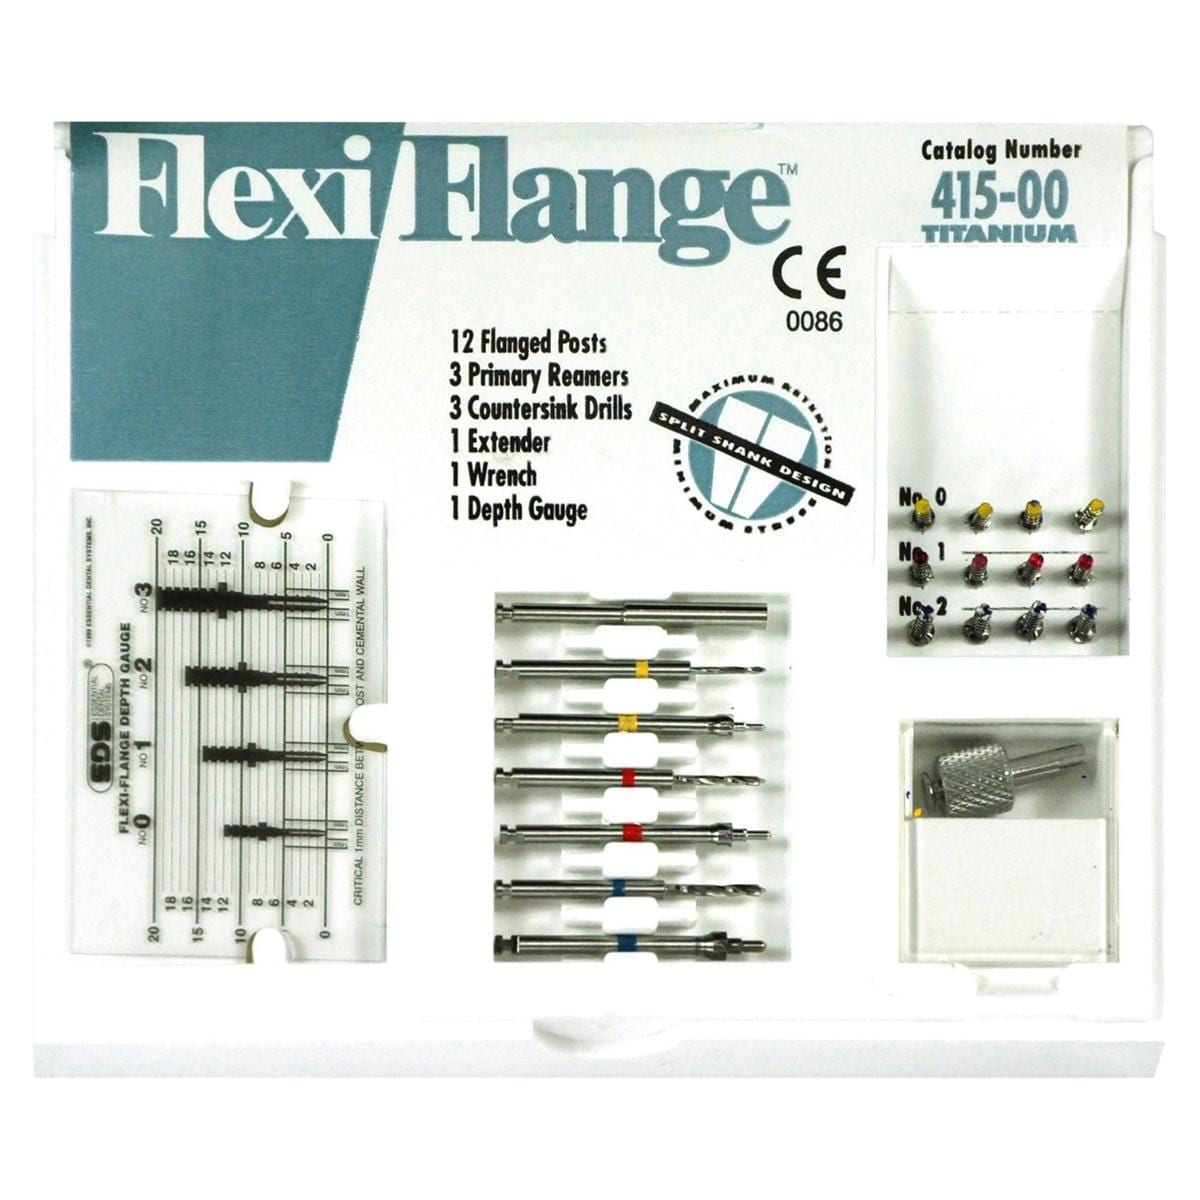 Flexi-Flange Titanium Anterior intro - 415-00